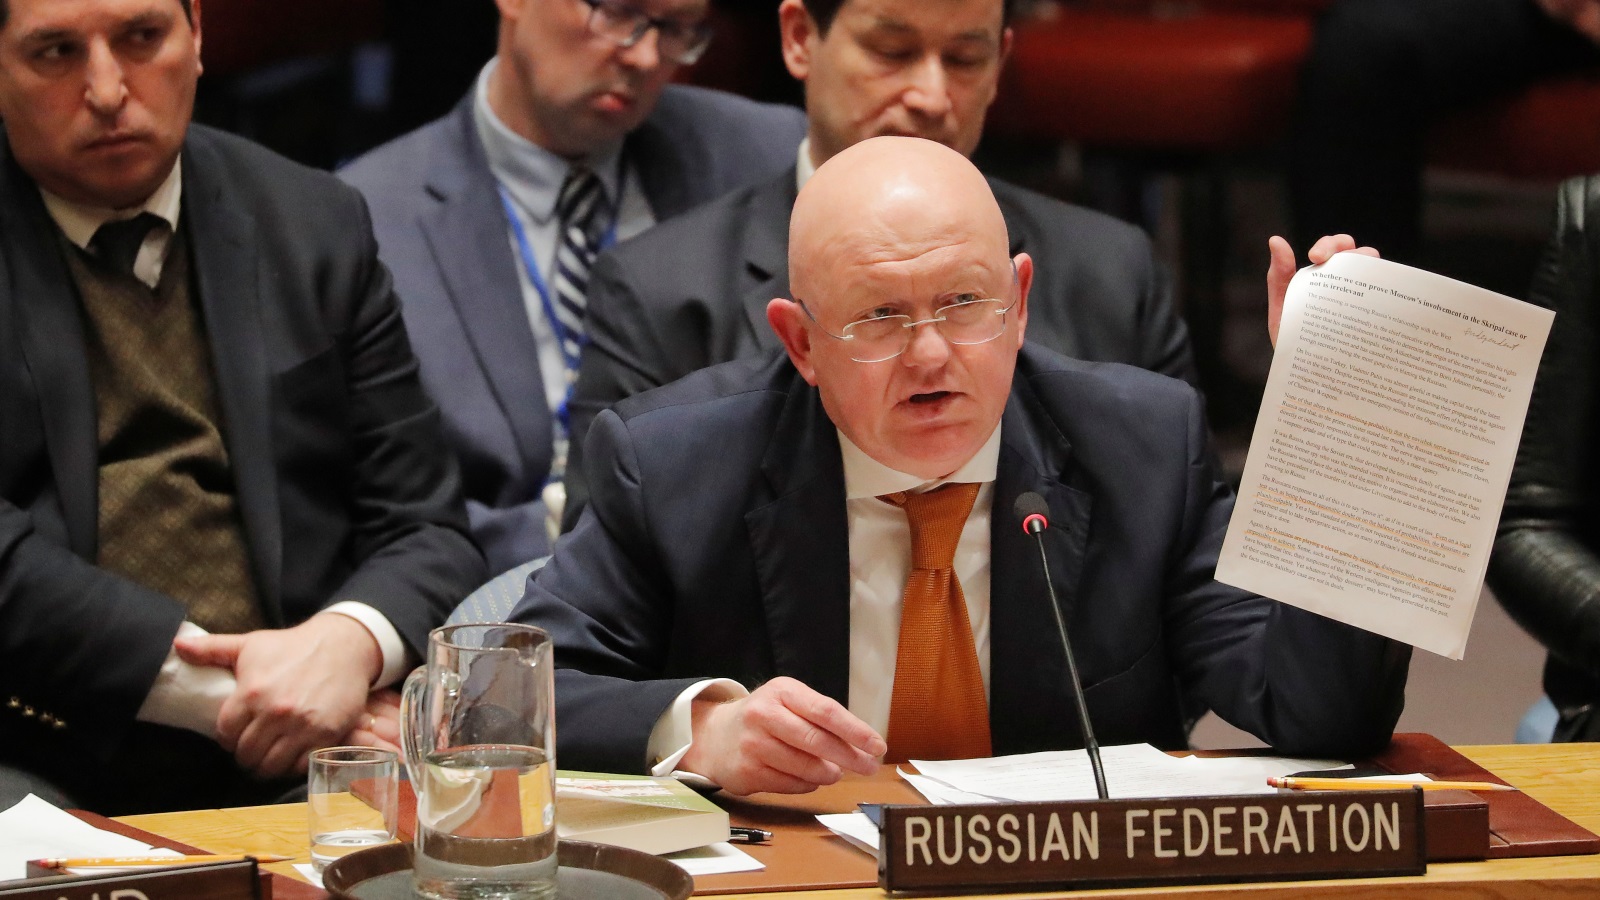 المندوب الروسي اعتبر أن الولايات المتحدة تسعى للخيار العسكري (رويترز)